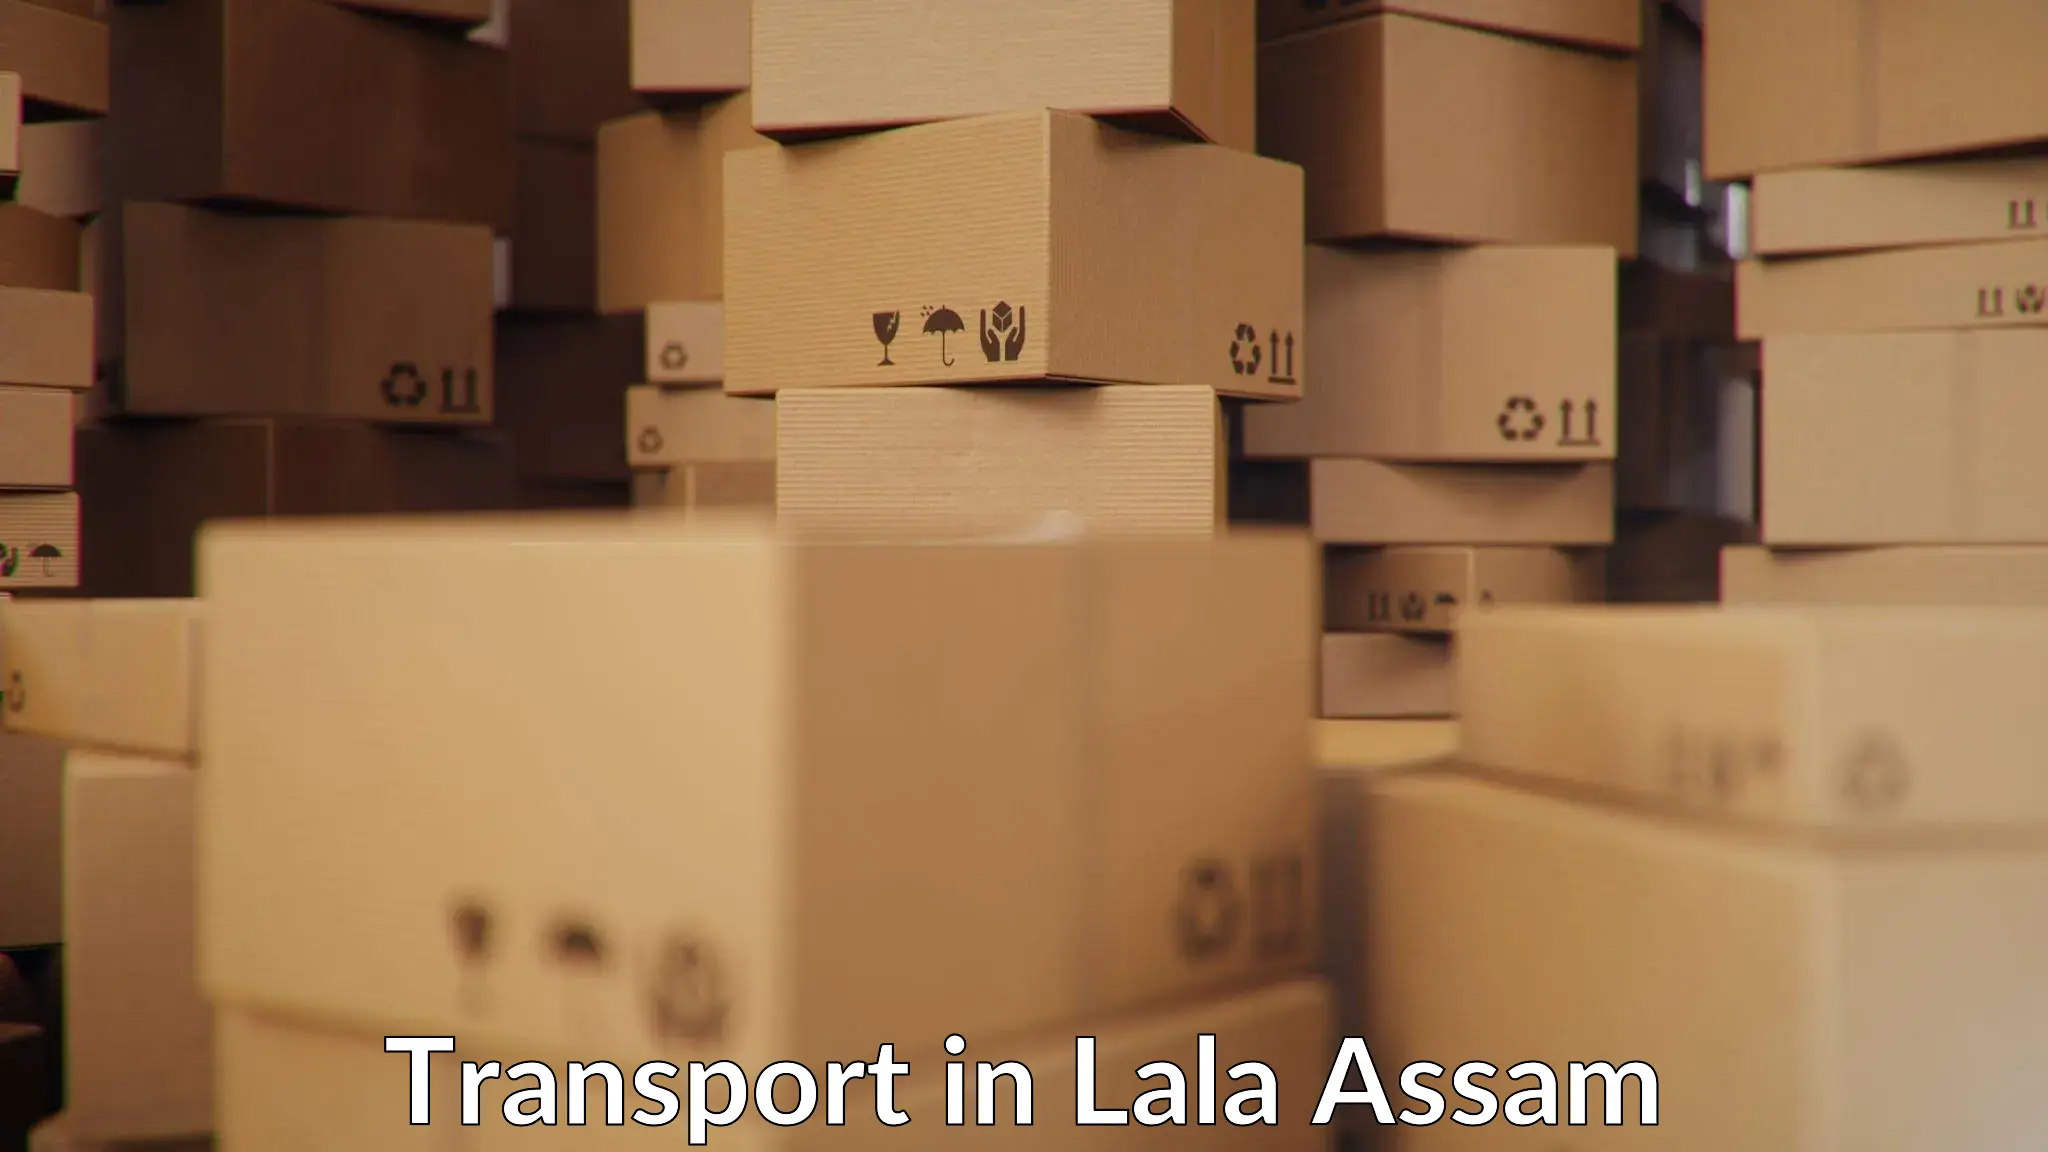 International cargo transportation services in Lala Assam